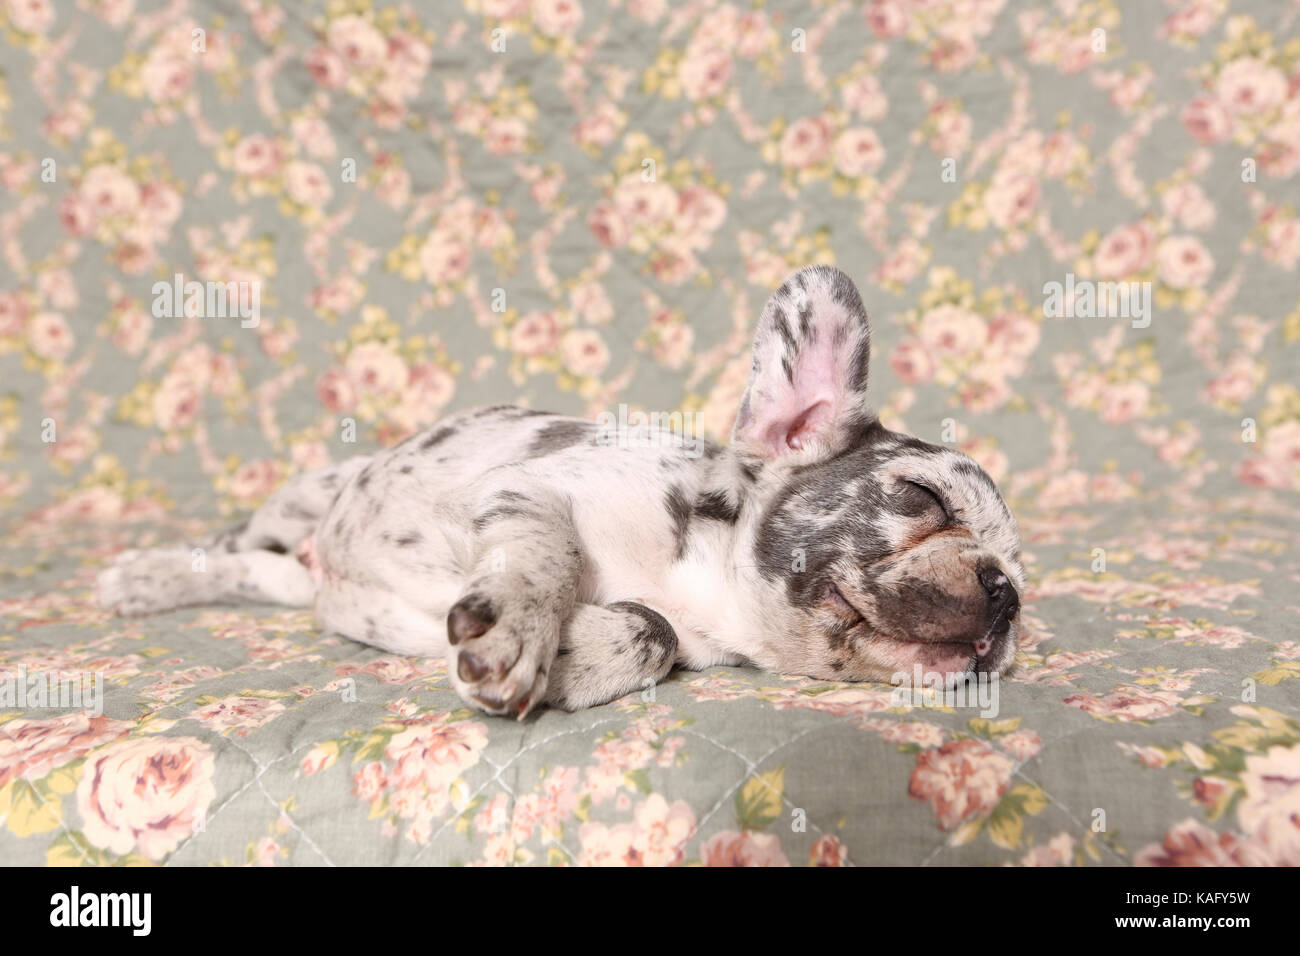 Bouledogue français. Puppy (6 semaines) de dormir sur une couverture avec impression de fleurs rose. Allemagne Banque D'Images